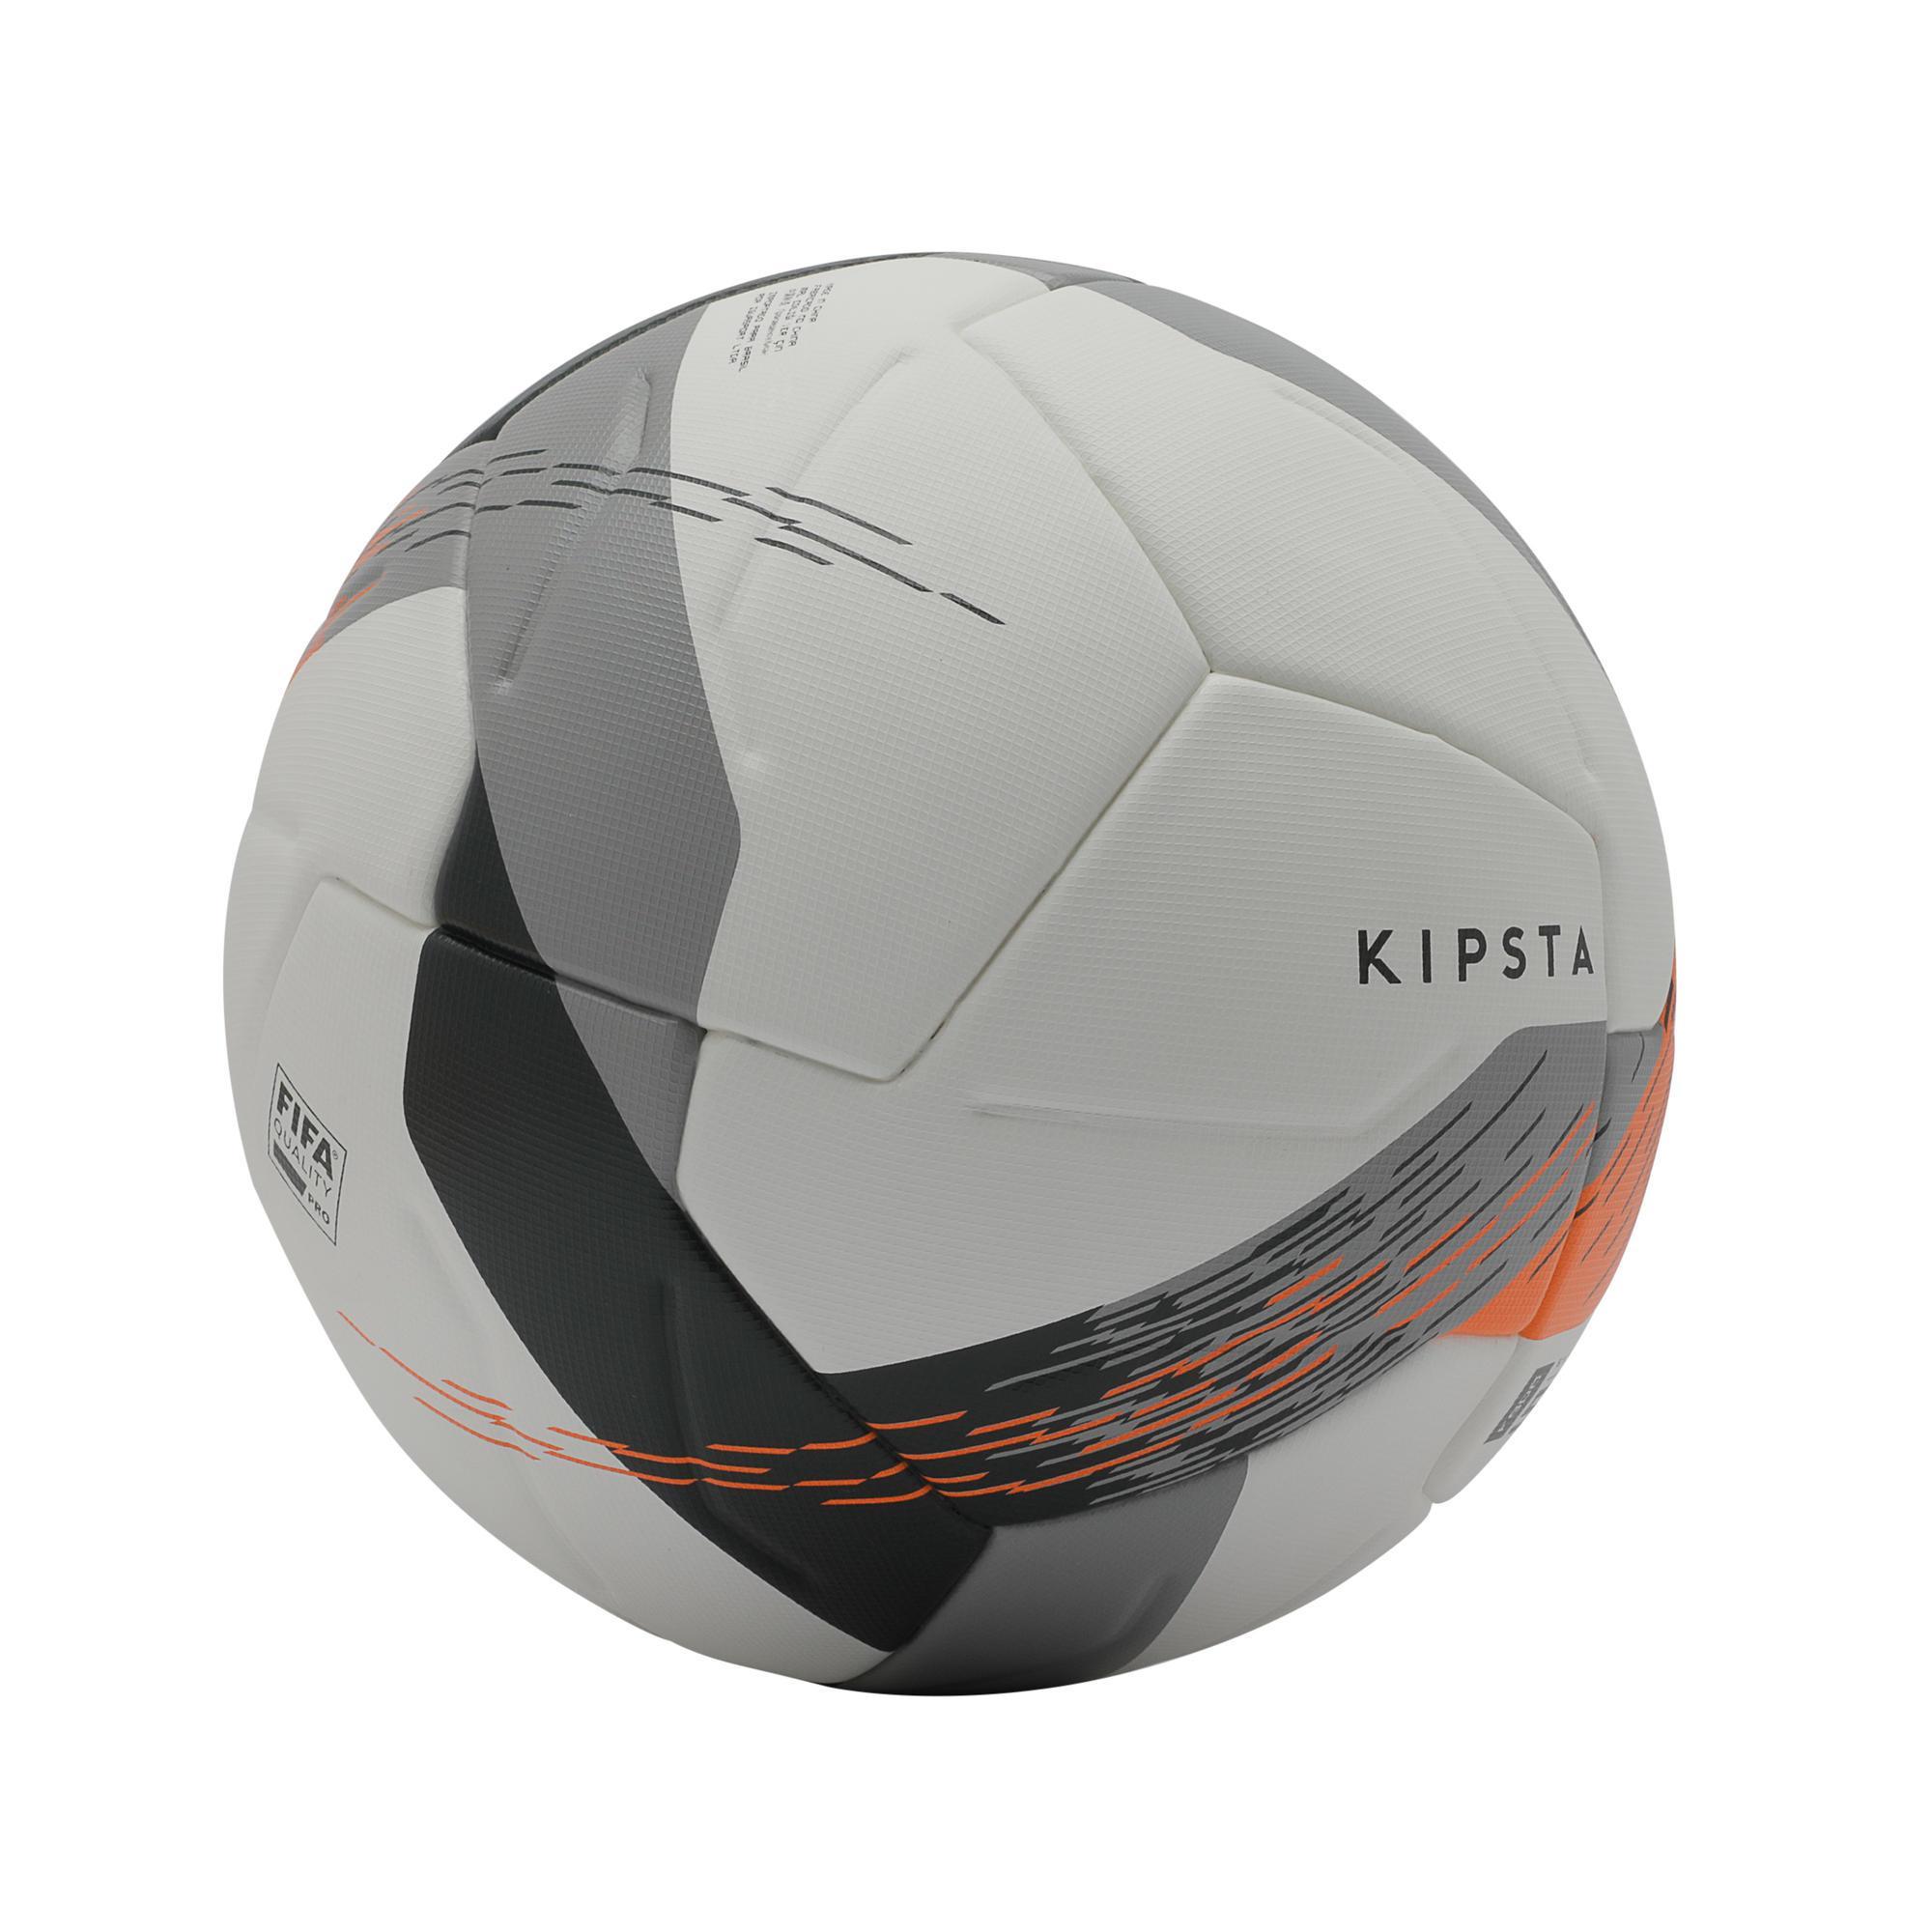 Fussball F900 FIFA Pro wärmegeklebt Grösse 5 weiss